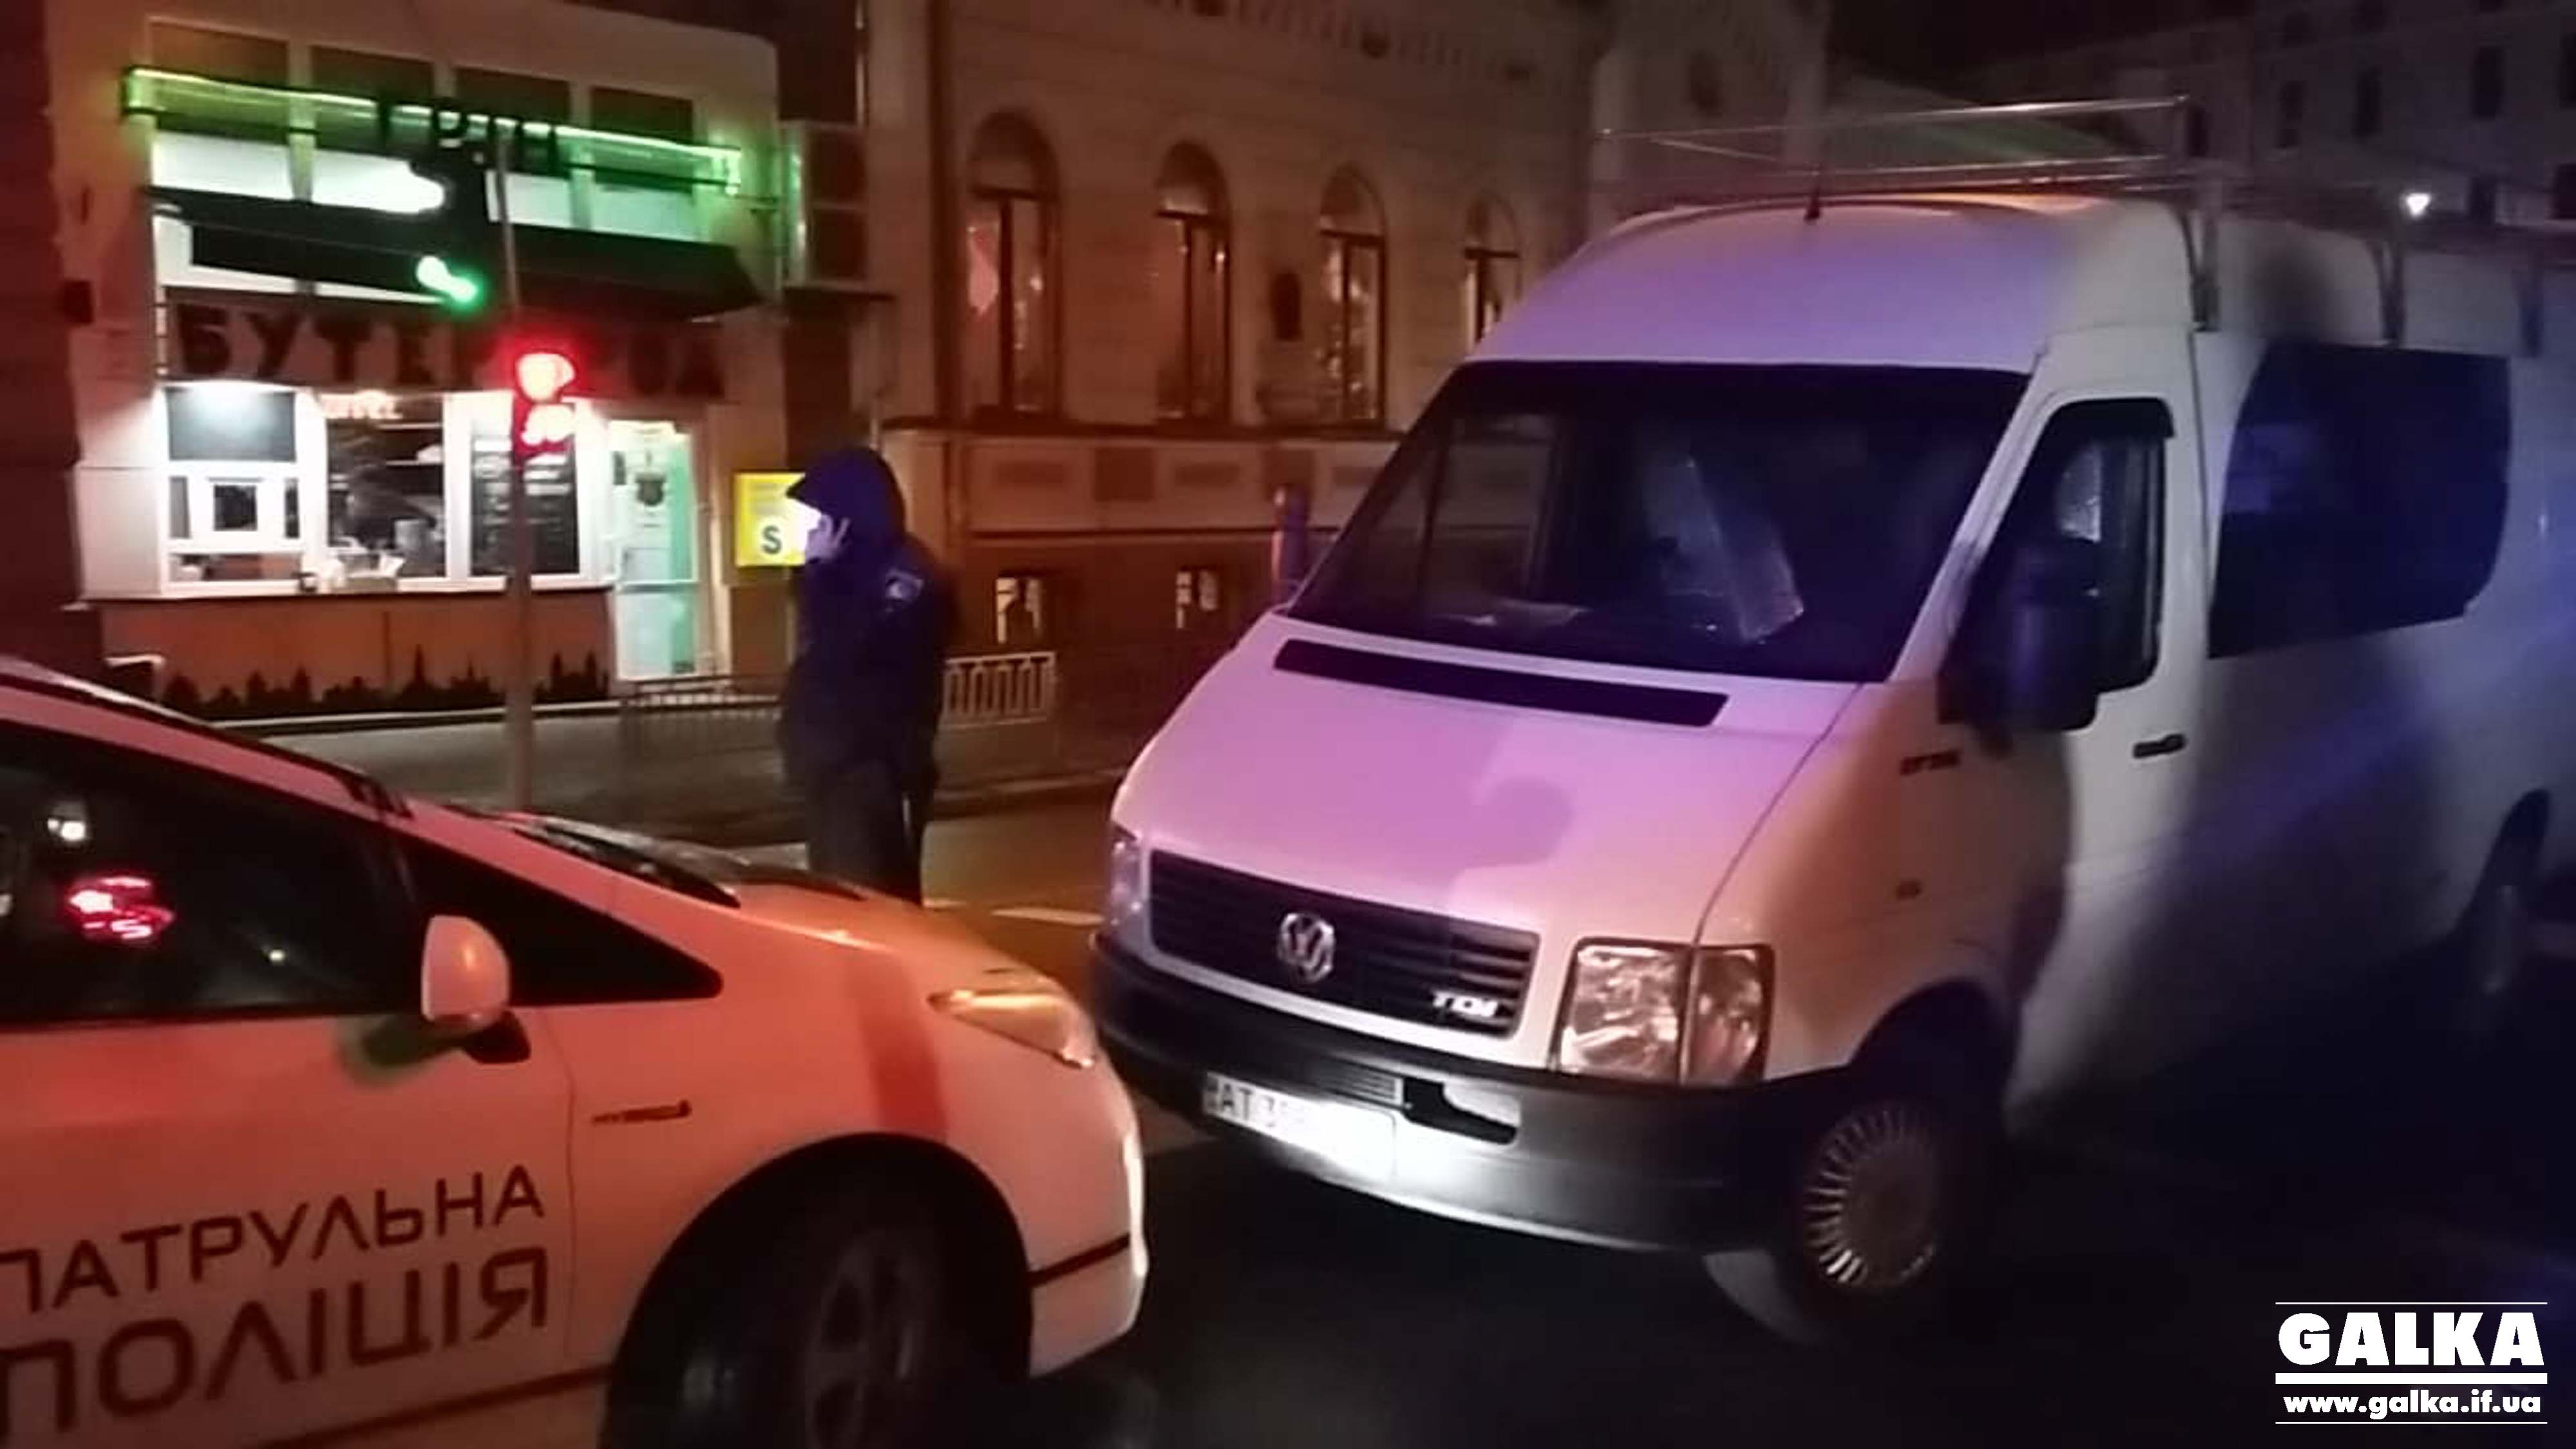 У центрі Франківська поліція заблокувала машину: перевіряють порушення виборчого законодавства (ФОТО)